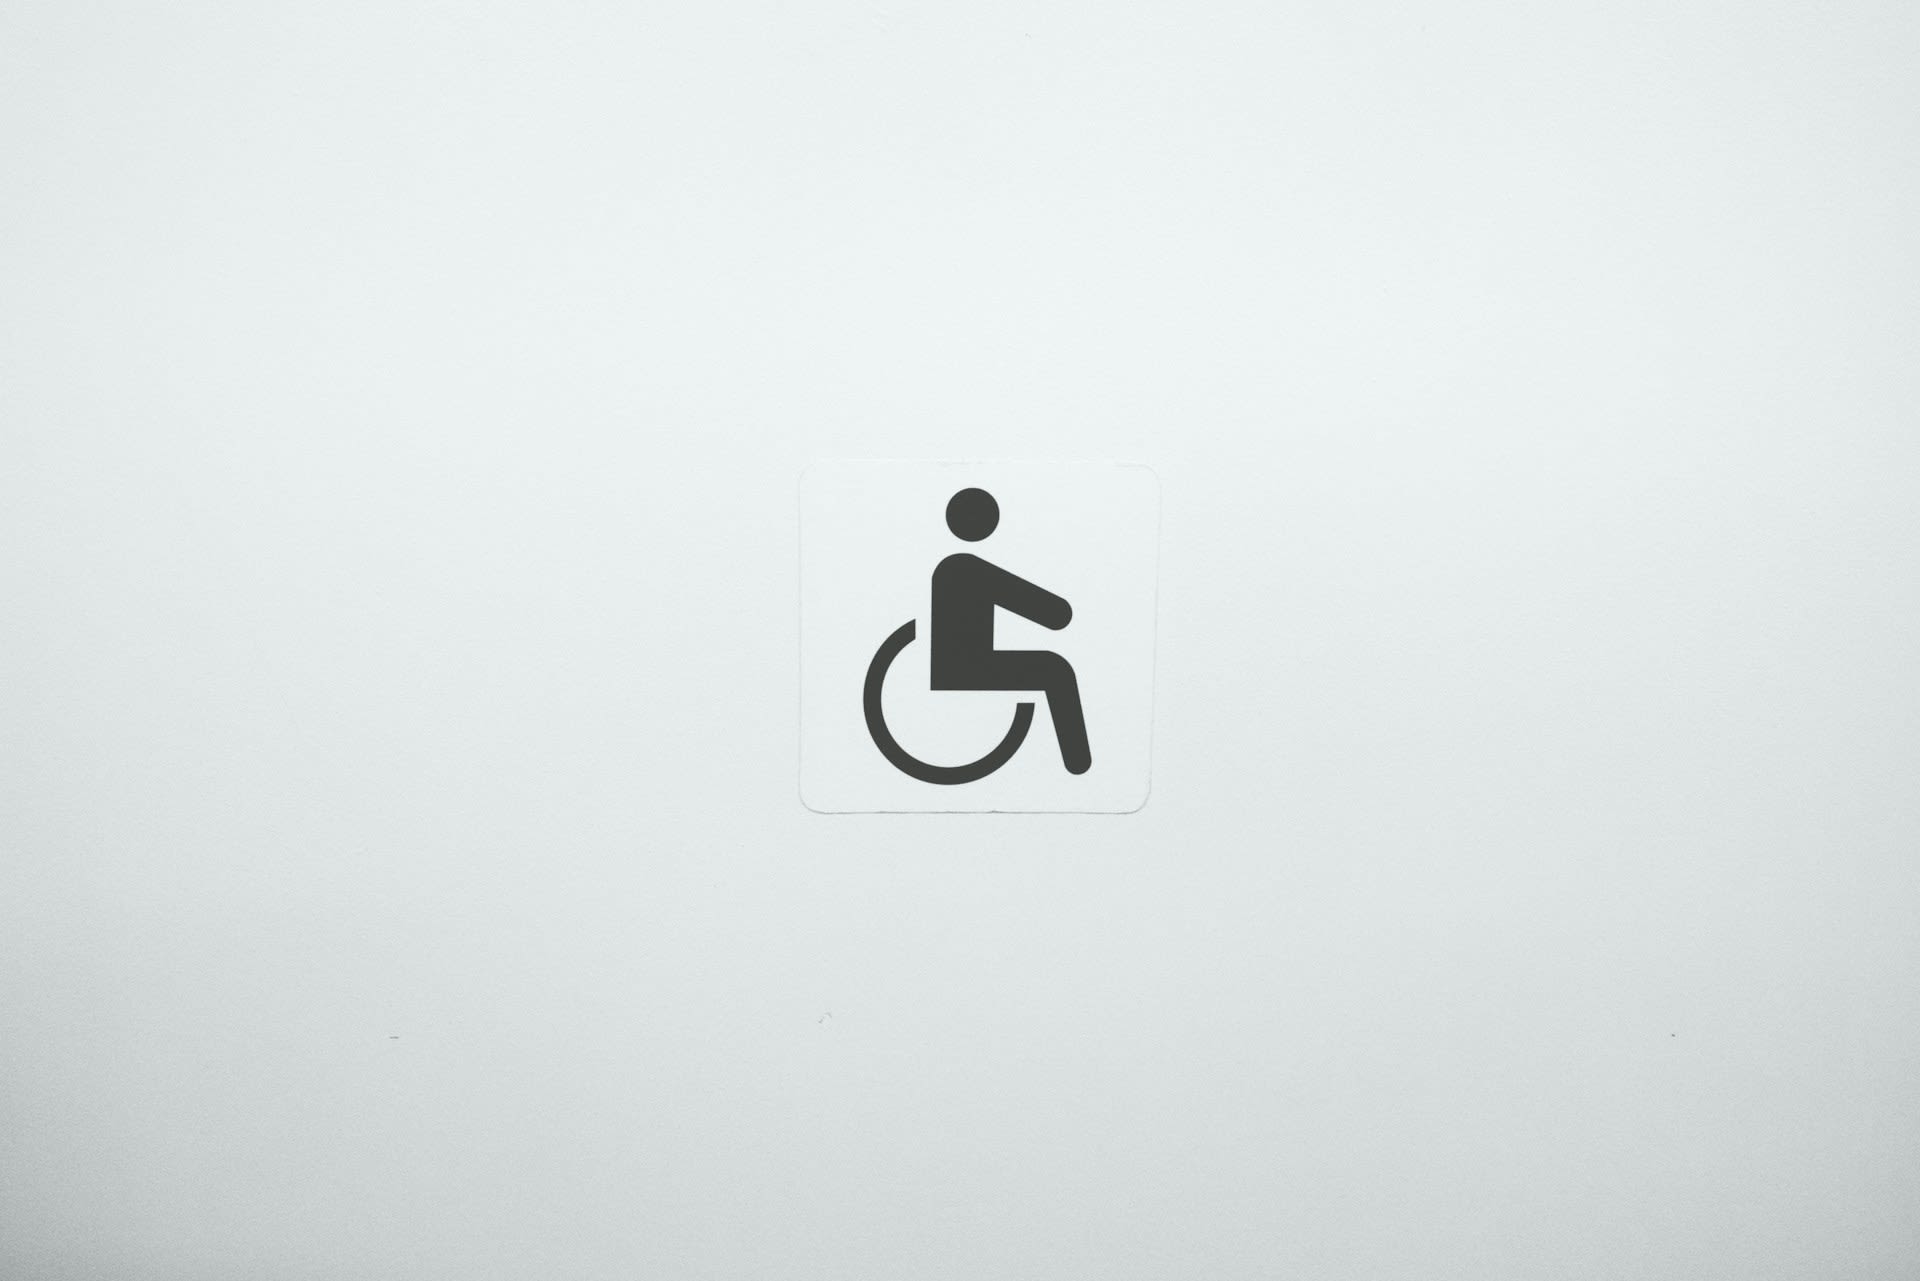 Platos de ducha para personas con movilidad reducida: claves